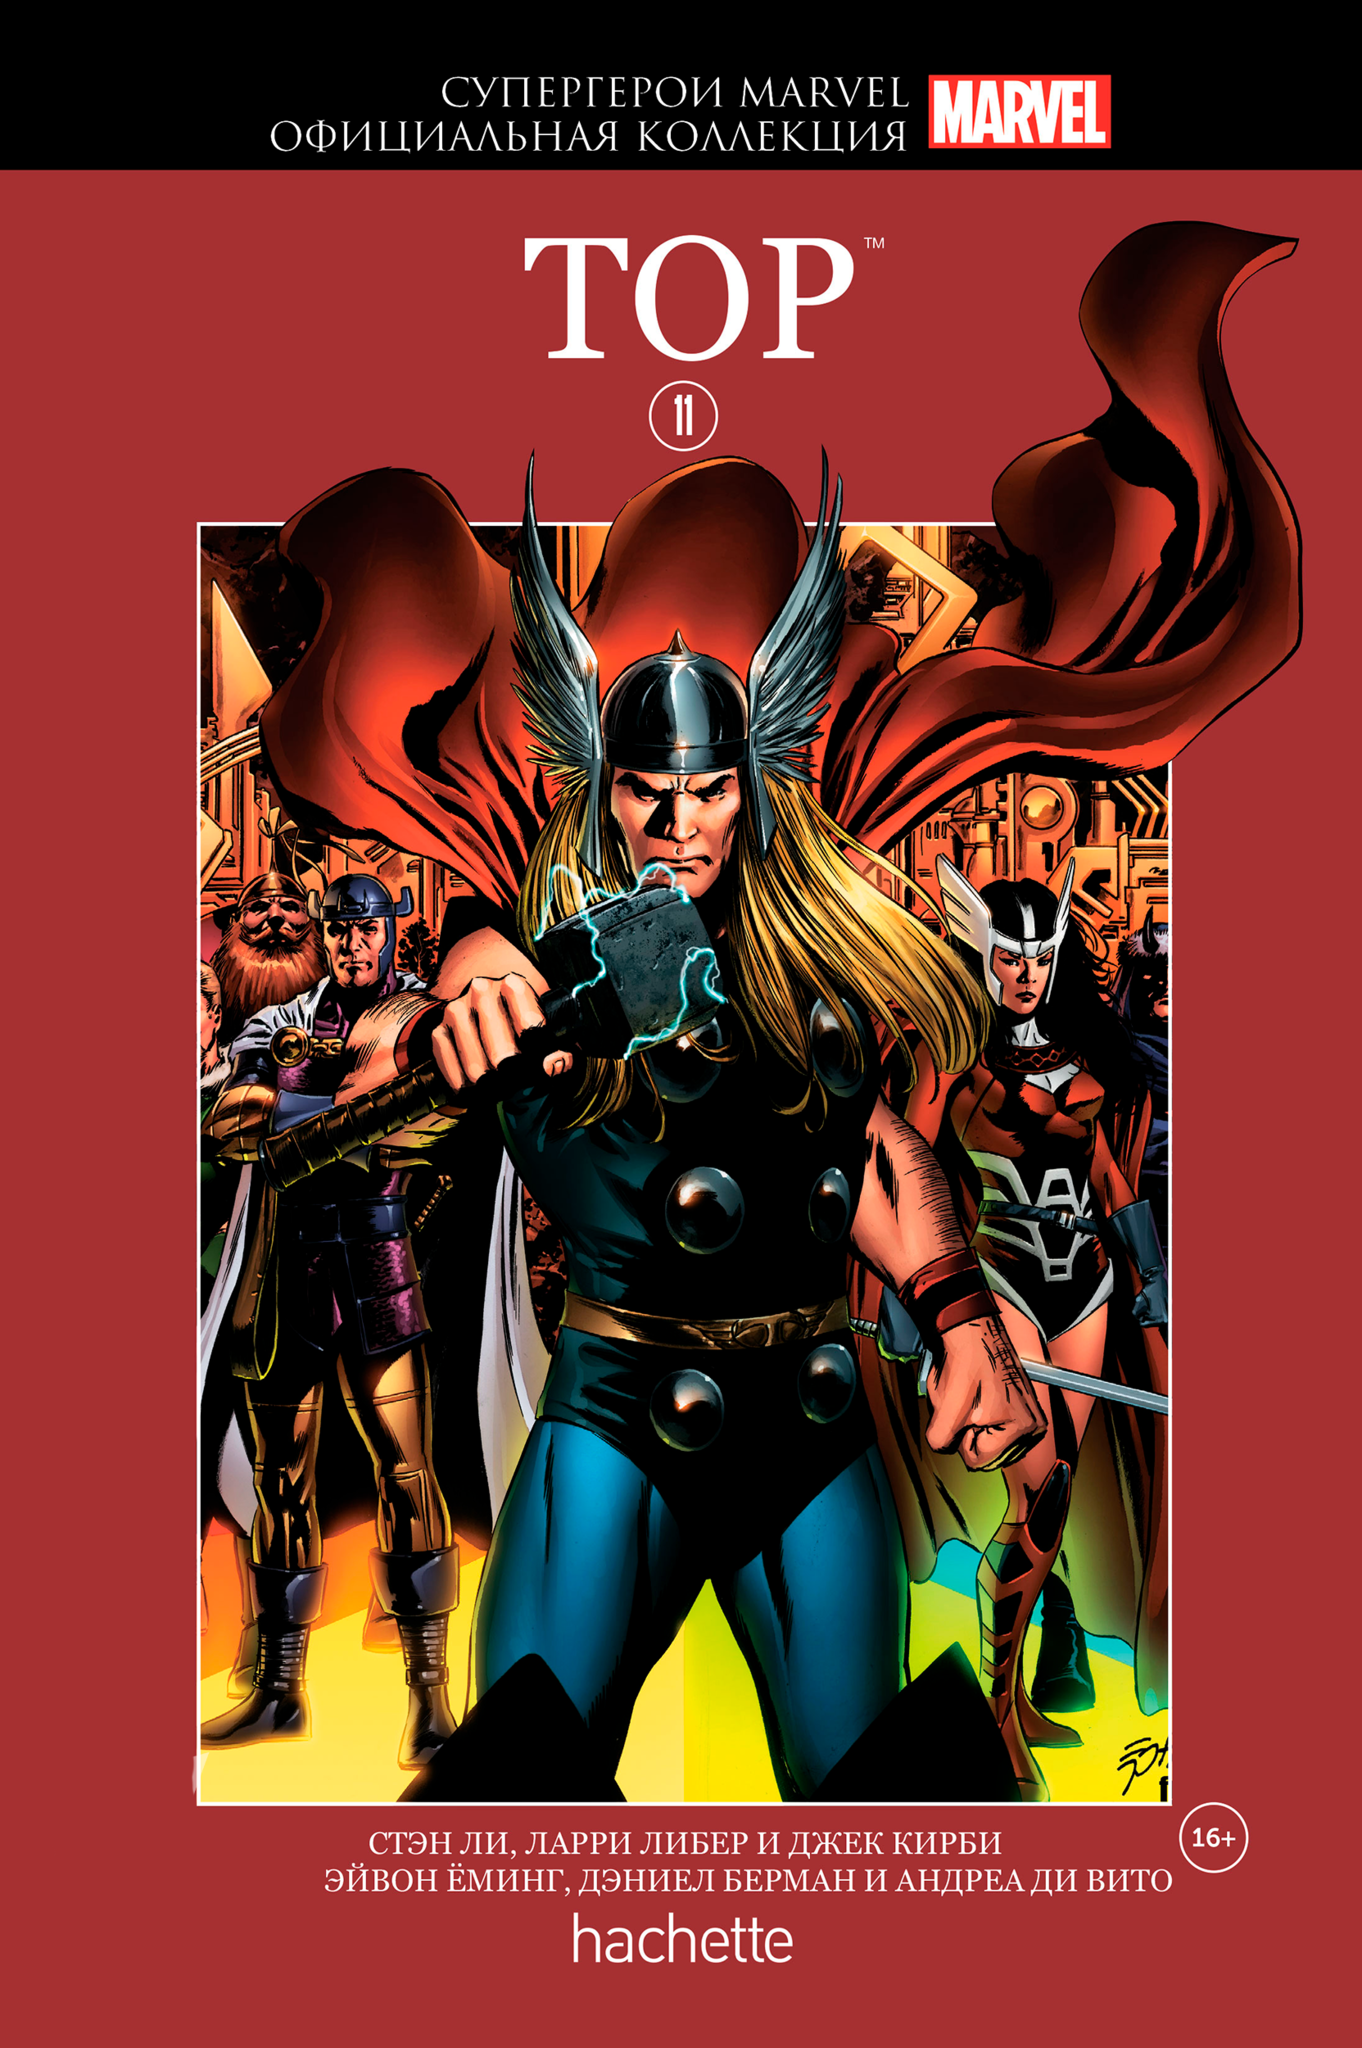 Hachette Официальная коллекция комиксов Супергерои Marvel: Тор. Том 11